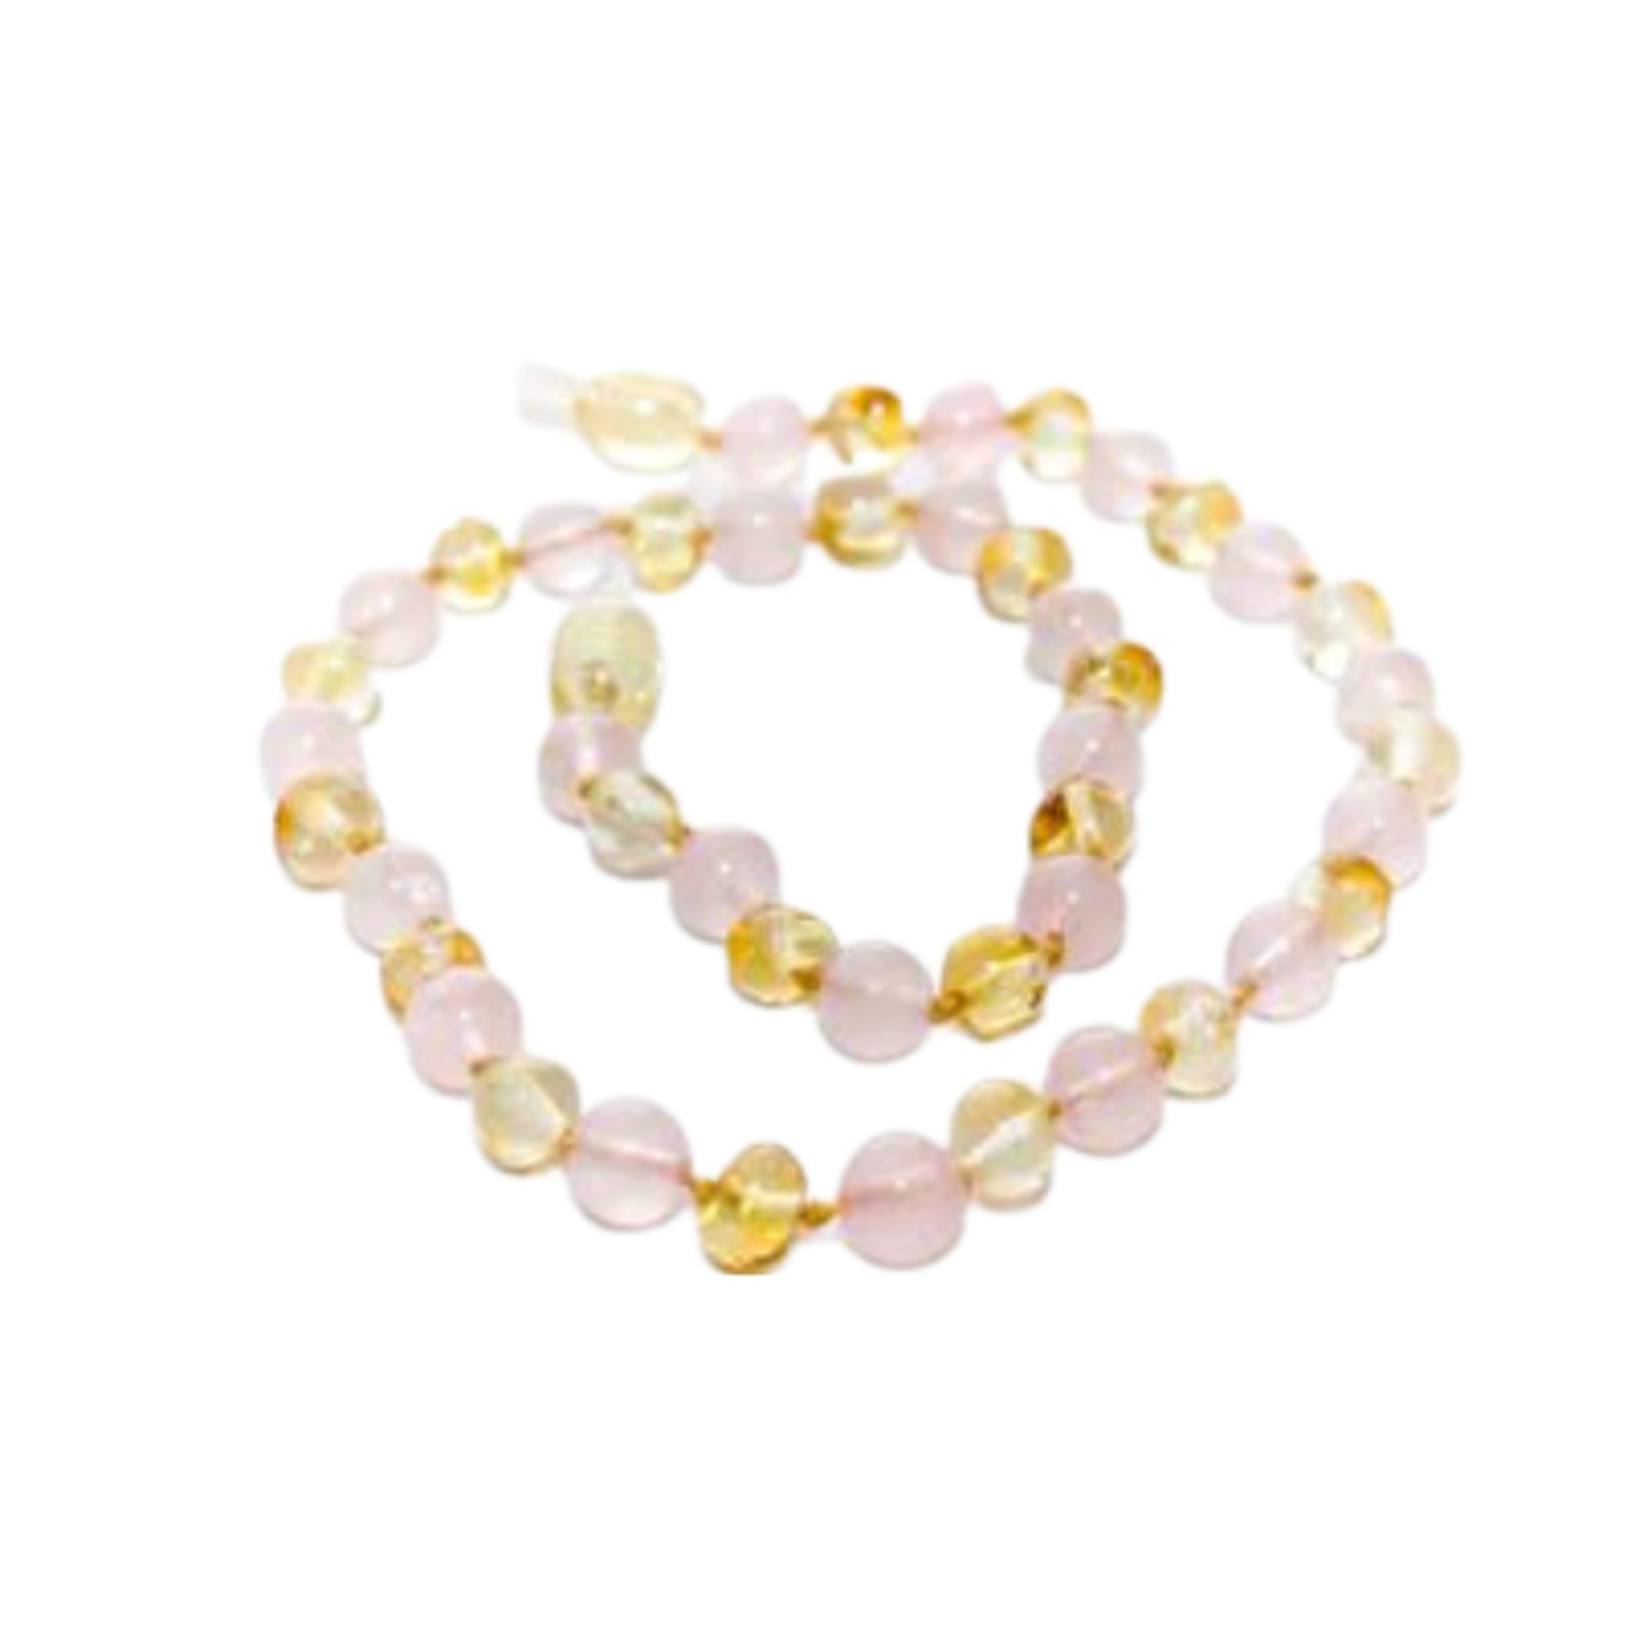 Healing Amber Healing Amber Gemstone Necklace Gold Amber/Rose